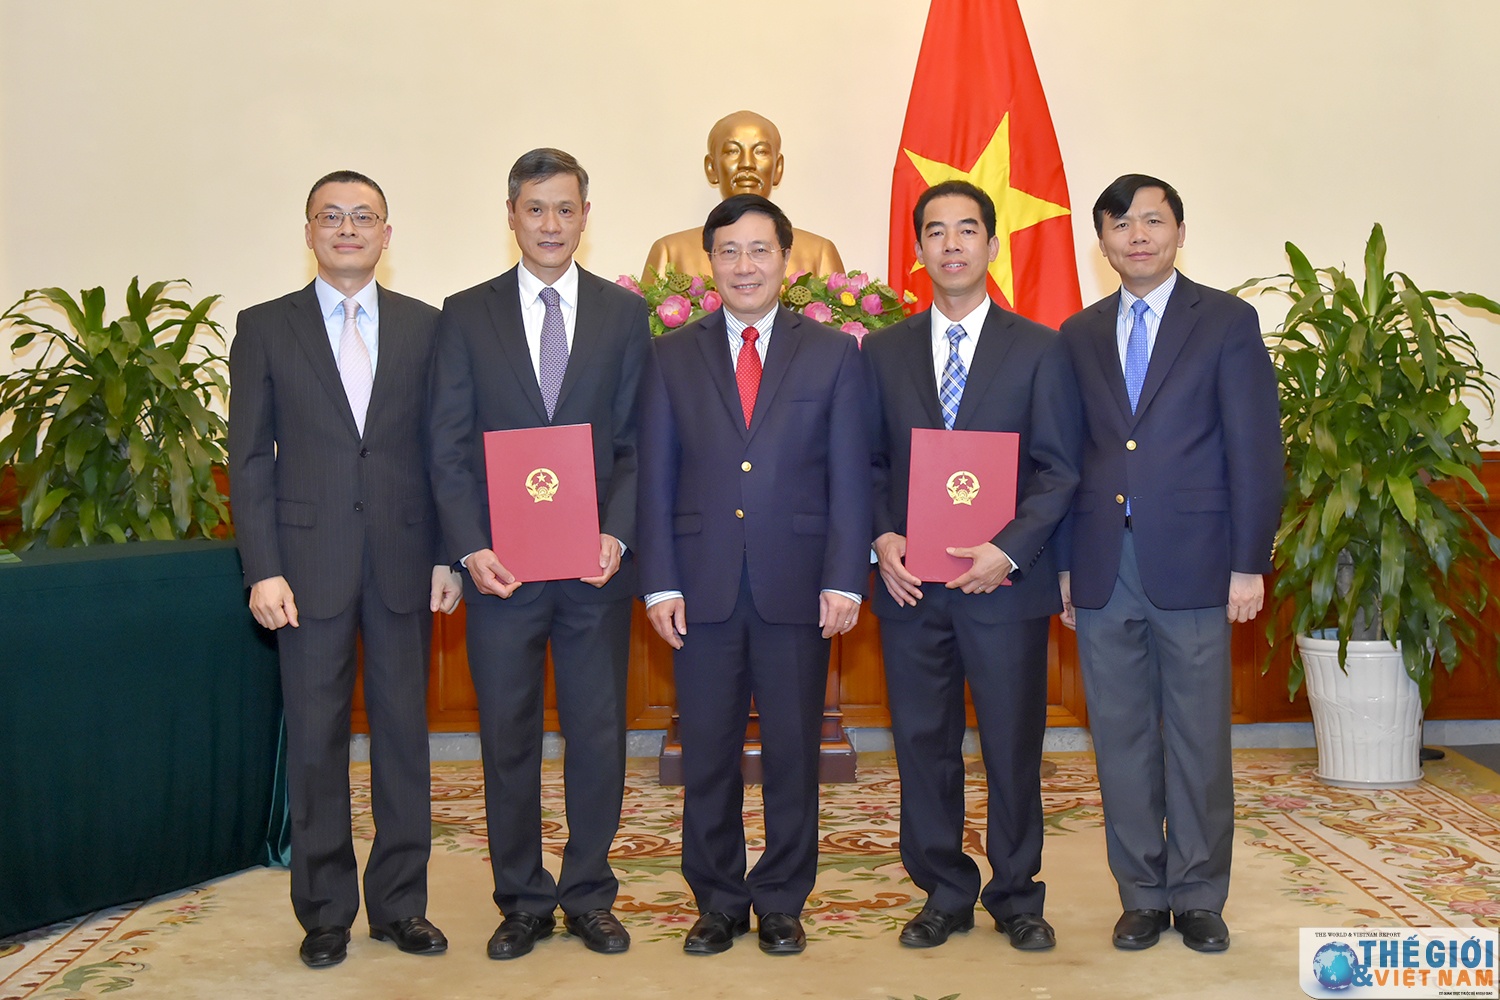  Phó Thủ tướng, Bộ trưởng Ngoại giao Phạm Bình Minh và các nhân sự vừa được bổ nhiệm. Ảnh: báo Quốc tế